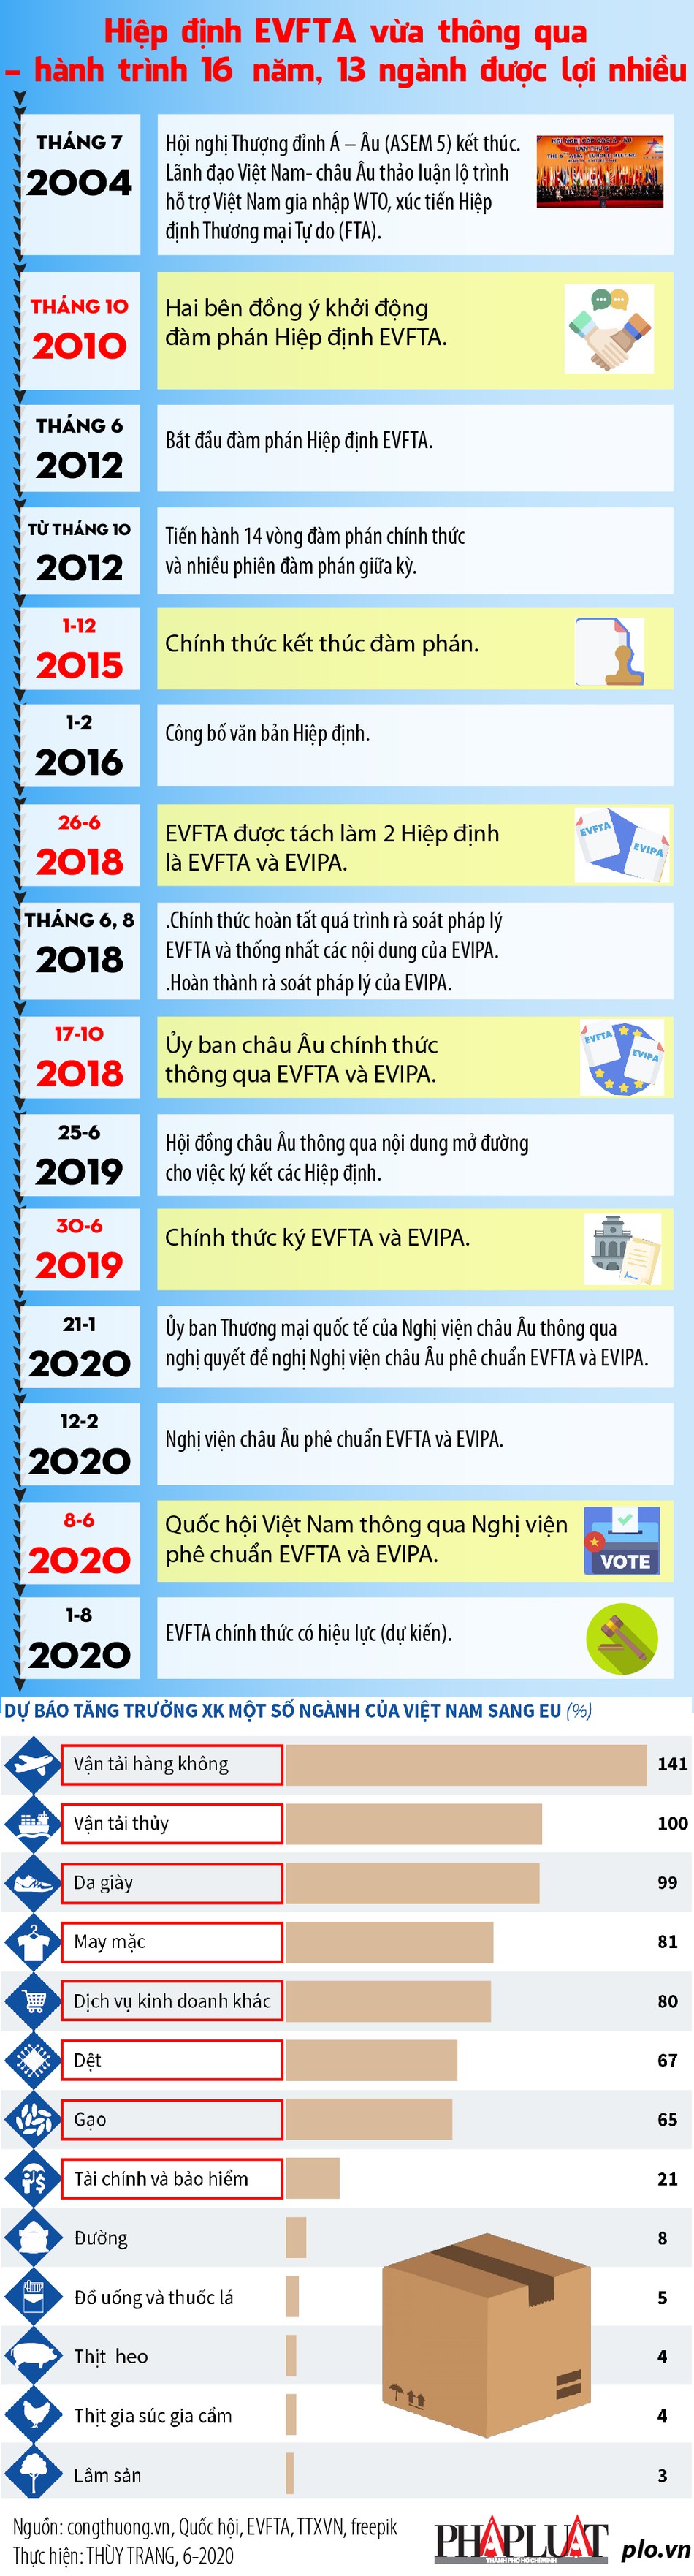 [Infographics] Hiệp định EVFTA: Hành trình 10 năm và 13 ngành được lợi nhiều - Ảnh 1